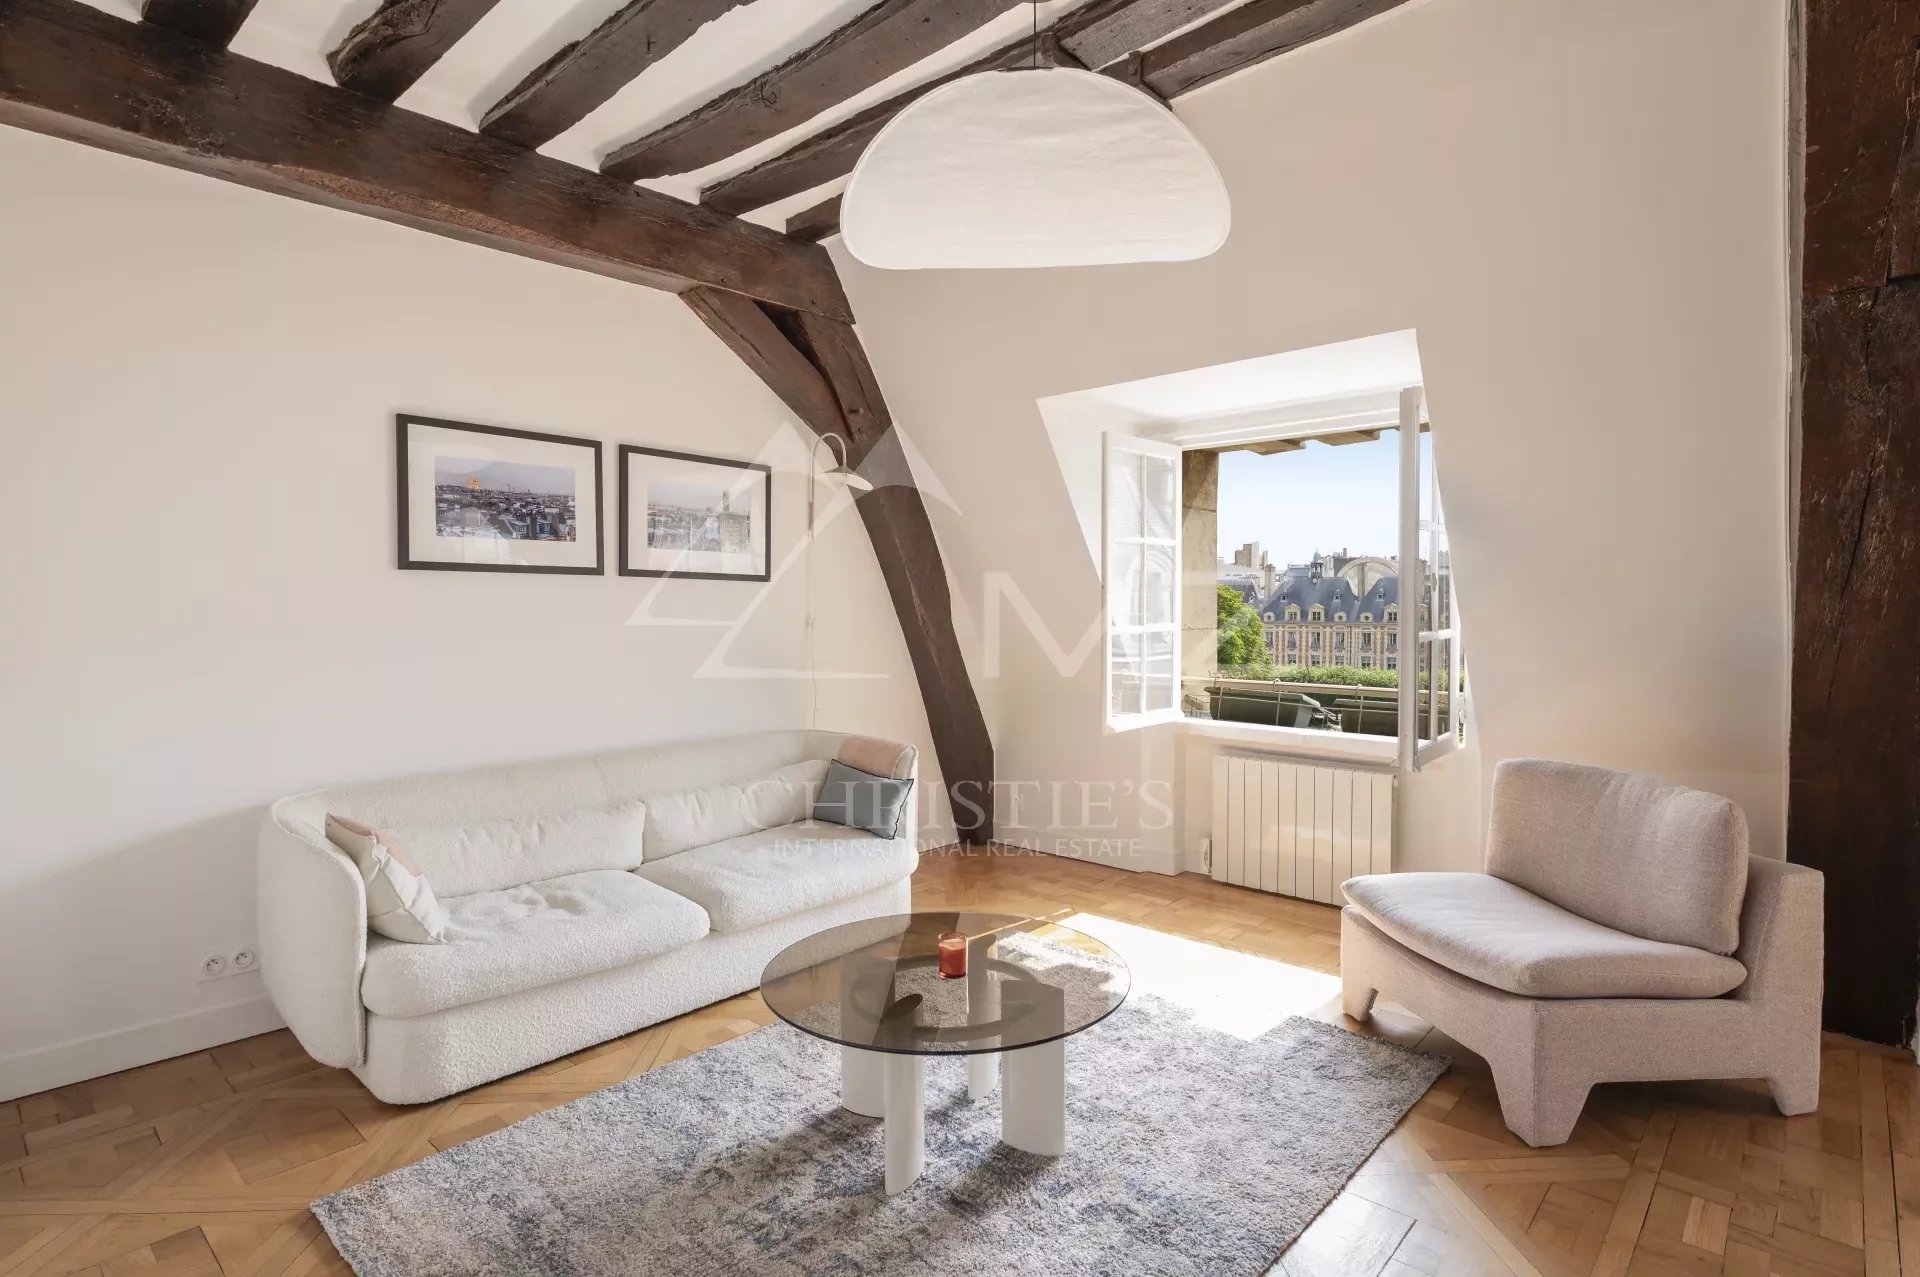 Verkauf Wohnung - Paris 75004 - Place des Vosges - Oberste Etage - Renoviert